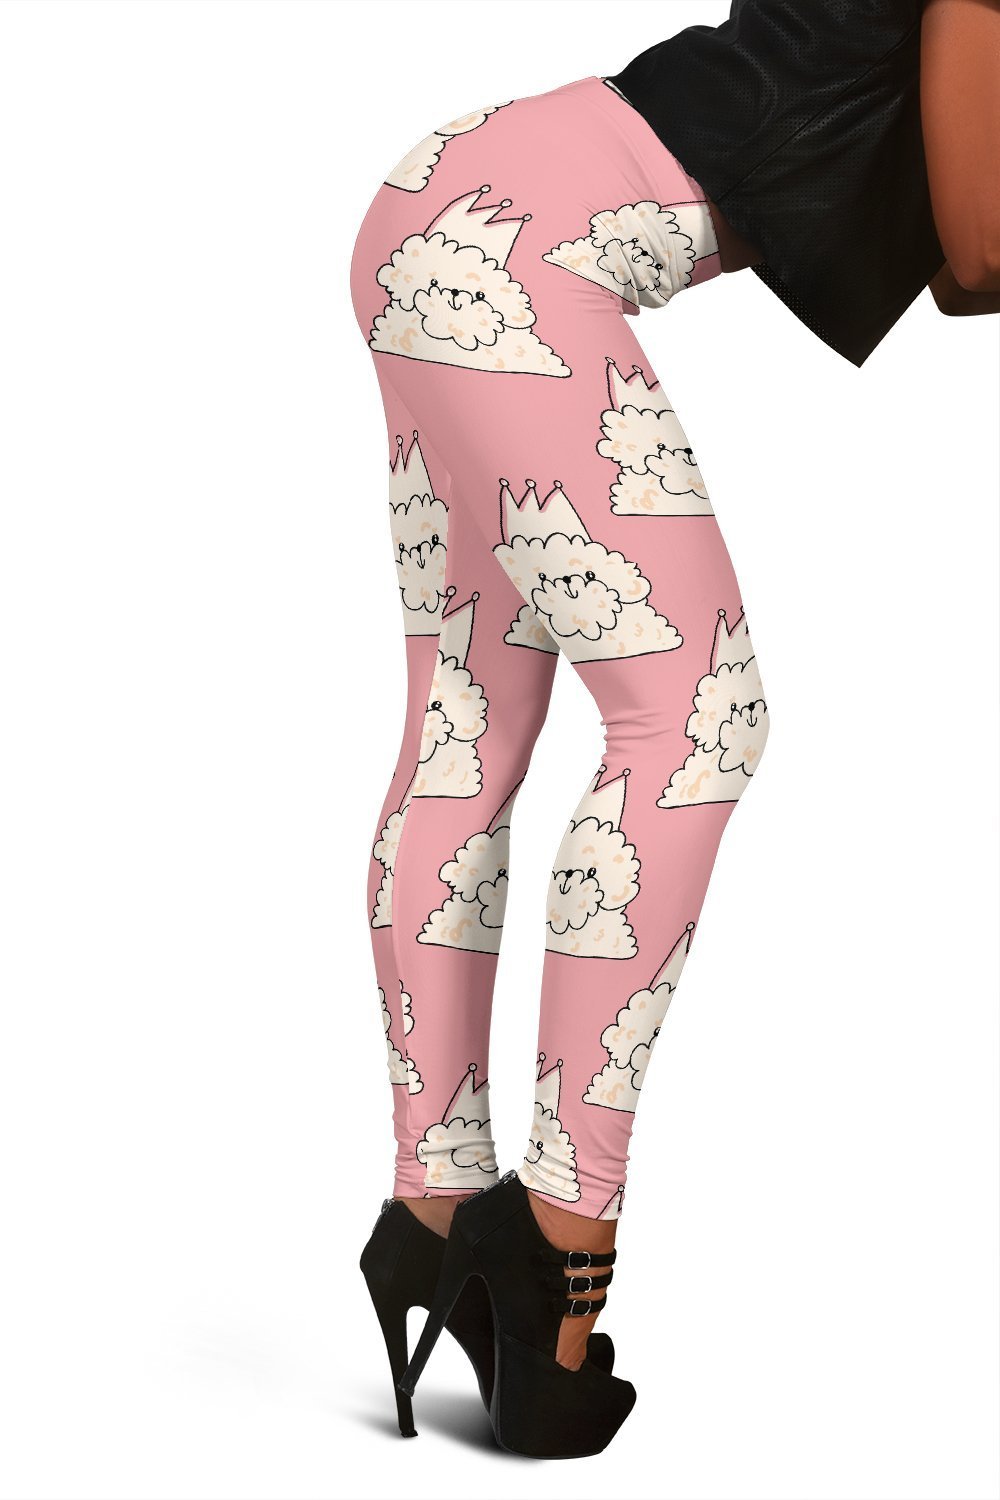 Bichon Frise Dog Print Pattern Women Leggings-grizzshop